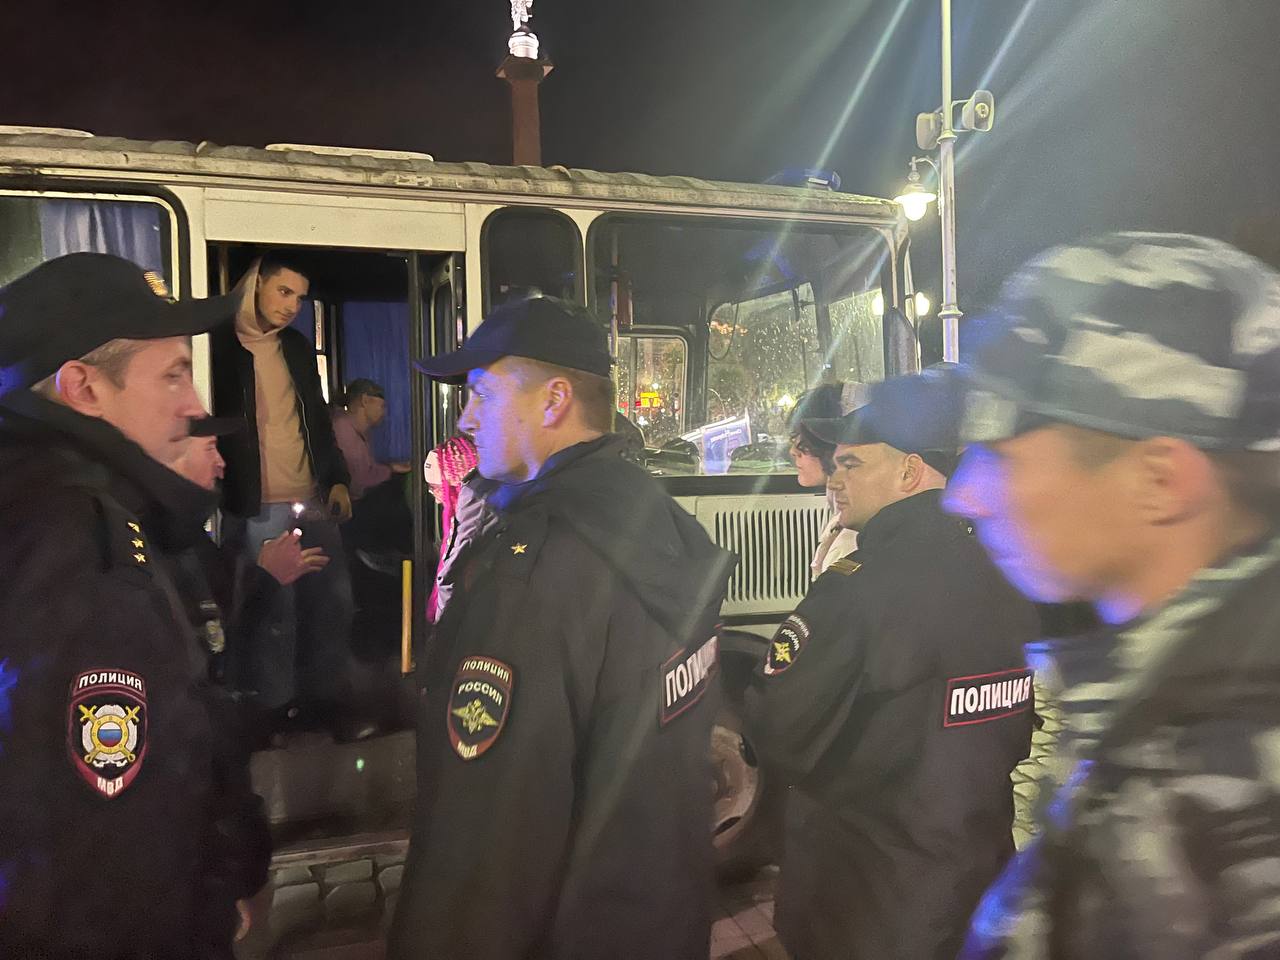 В Калининграде начались задержания участников акции протеста (фото) (видео)